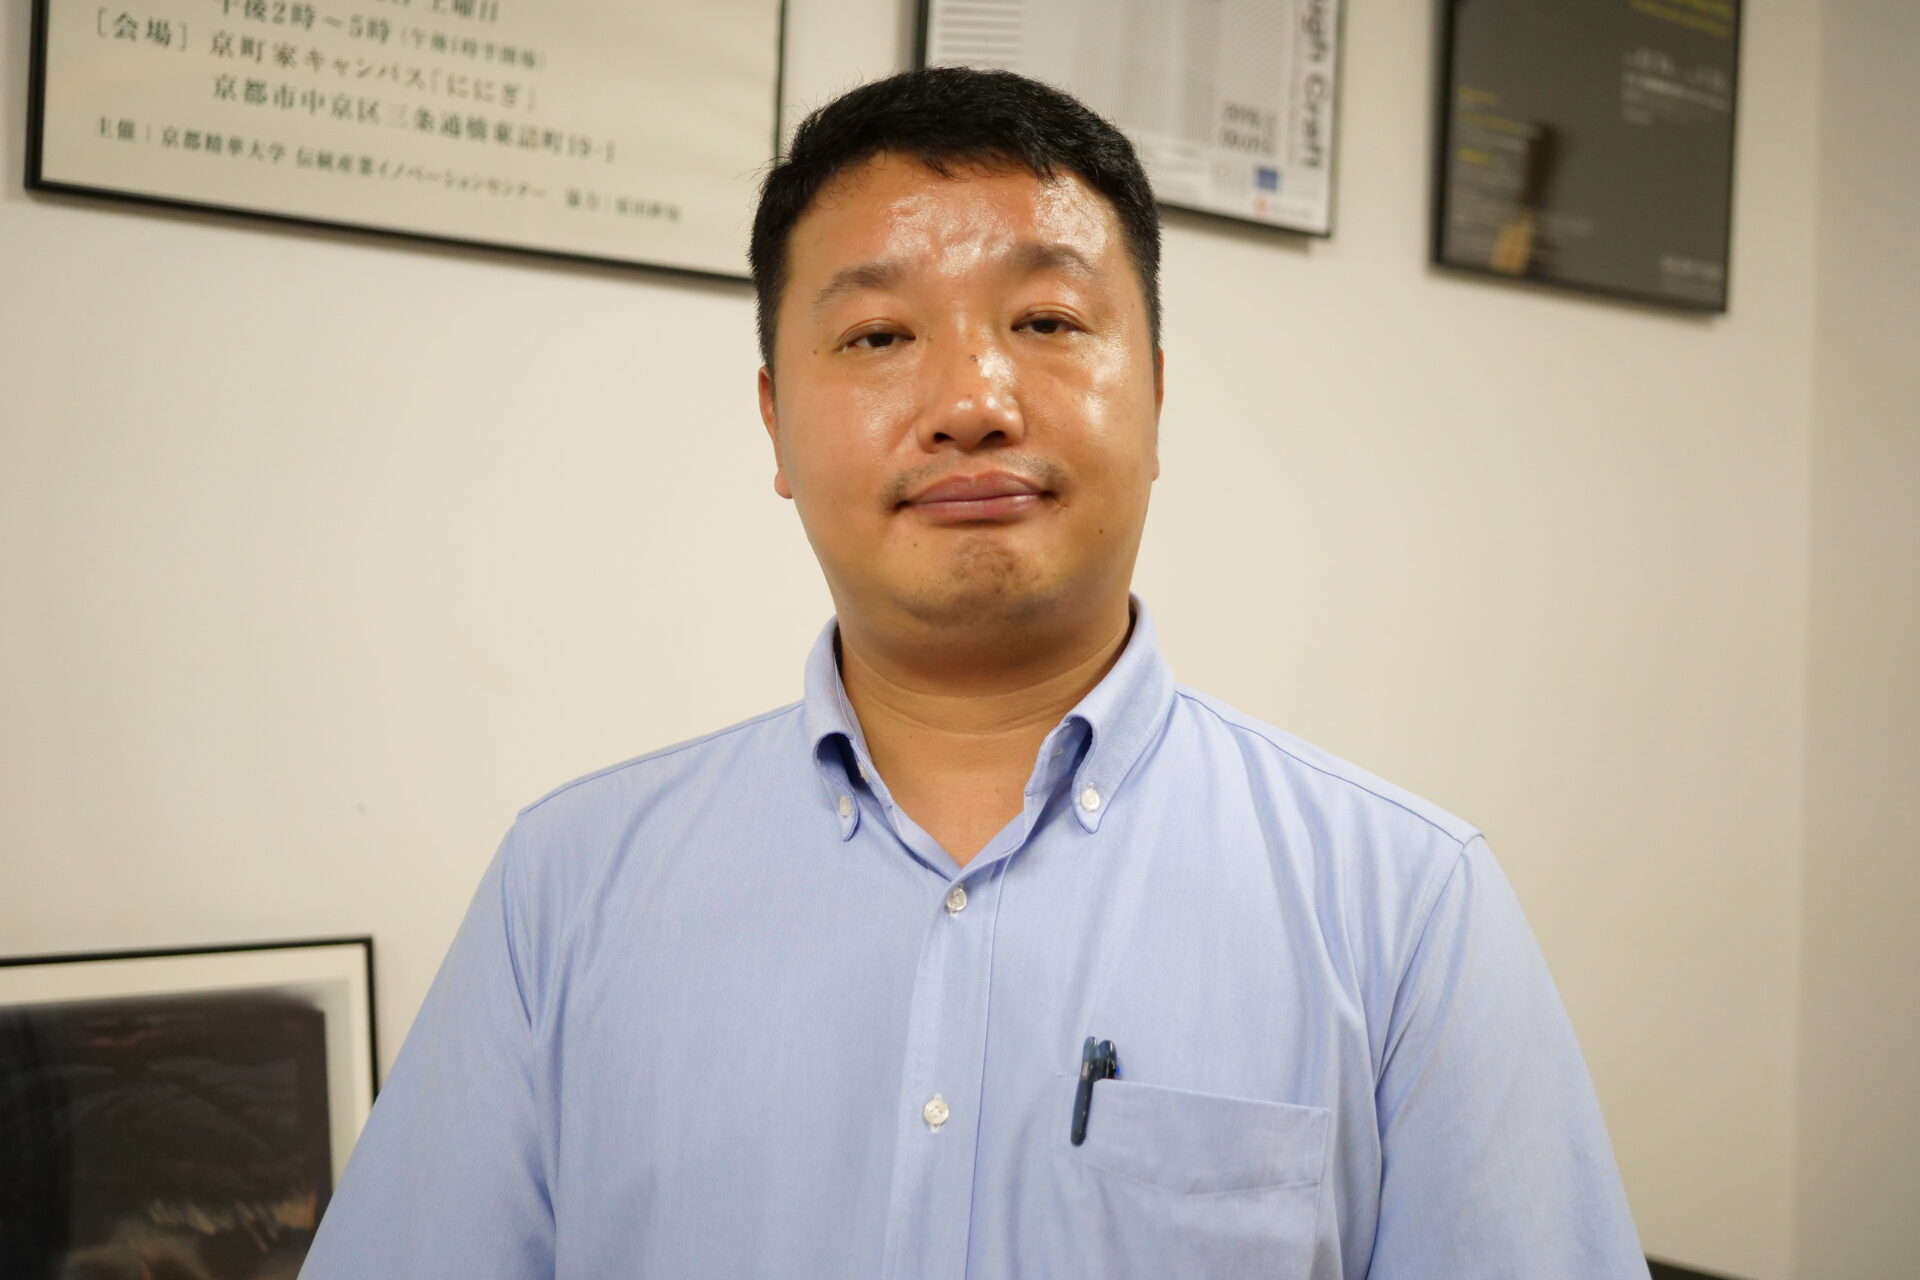 夏 世明（KA Seimei）
社会実践力育成プログラムコーディネーター兼担当講師